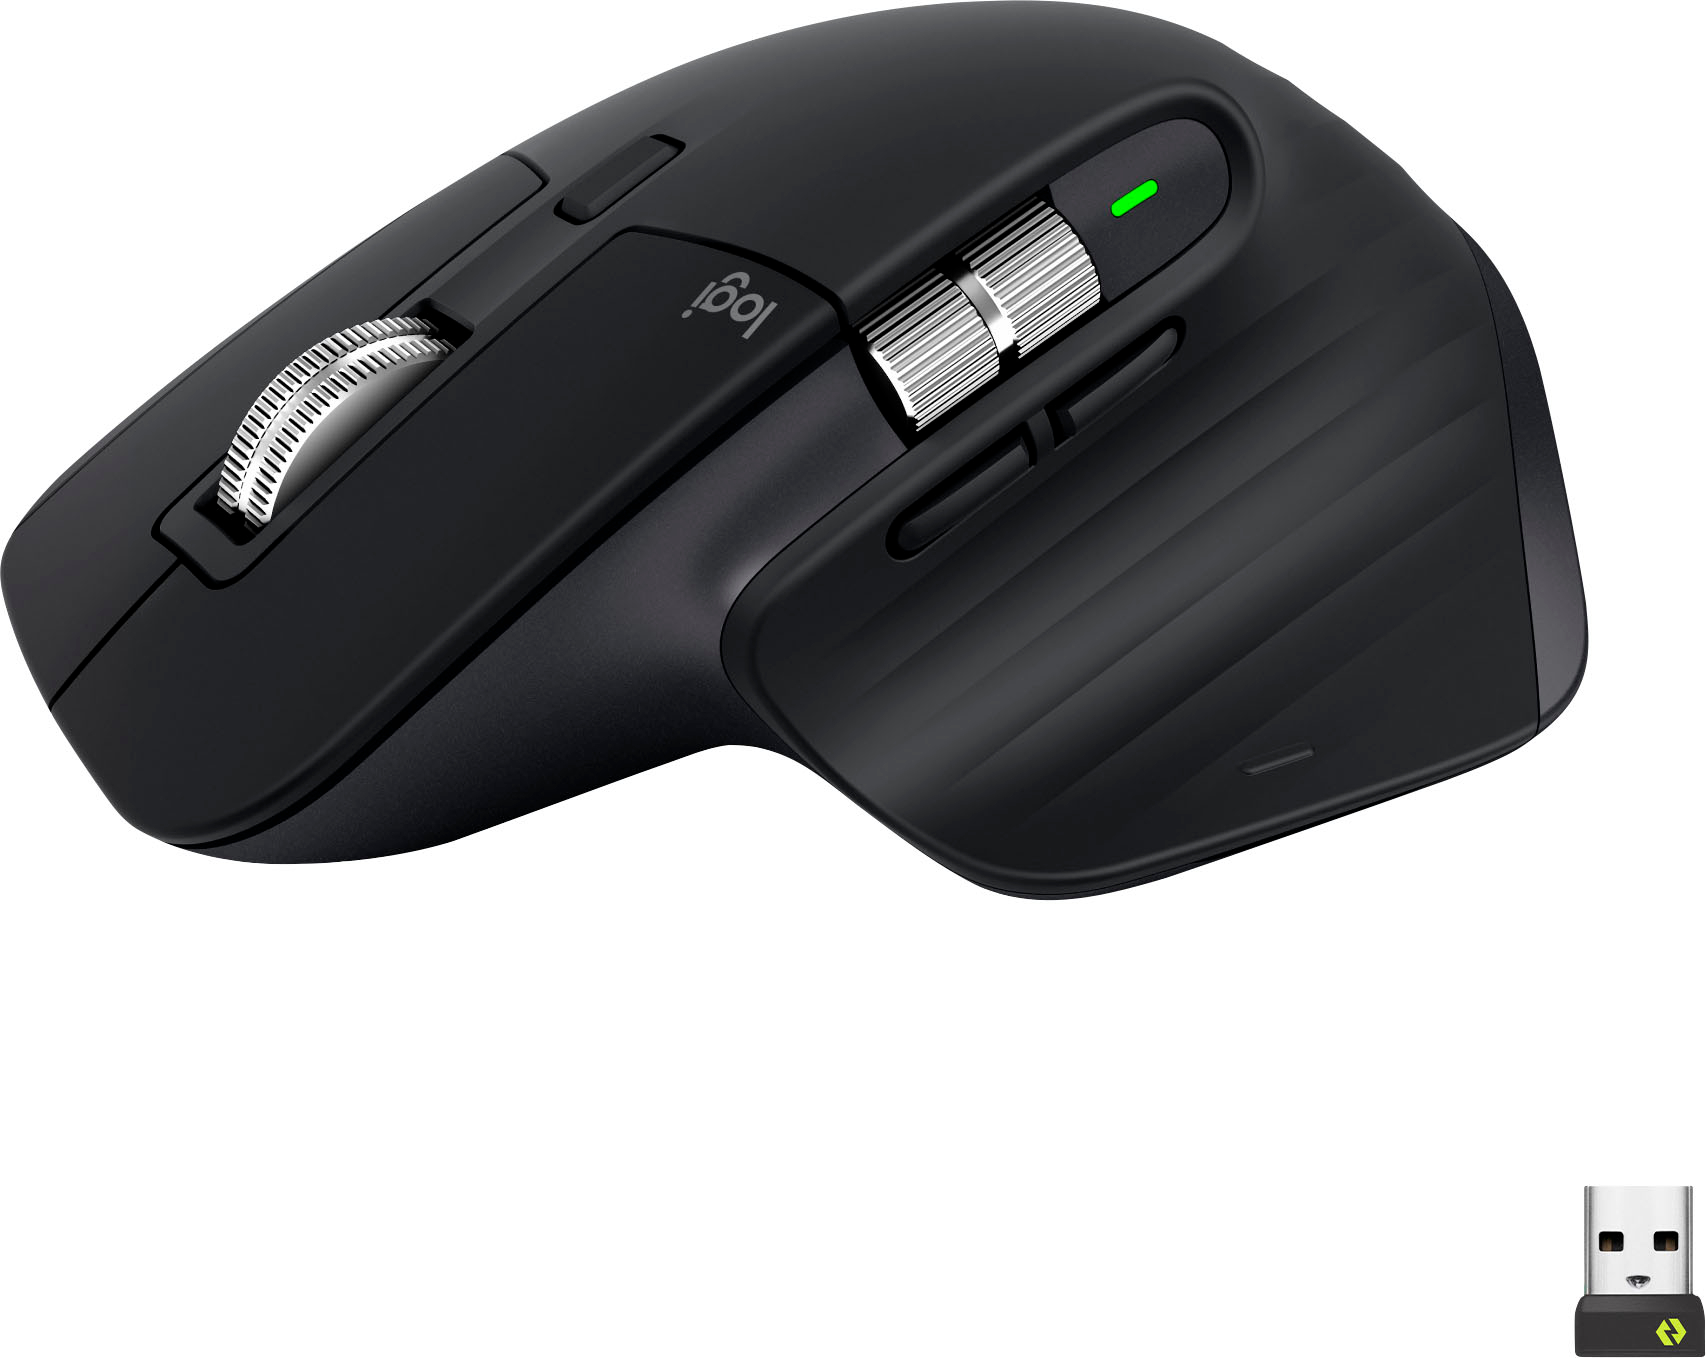 Logitech MX Master 3S Wireless Mouse Ultrafast Scrolling Black 910-006556 - Best Buy